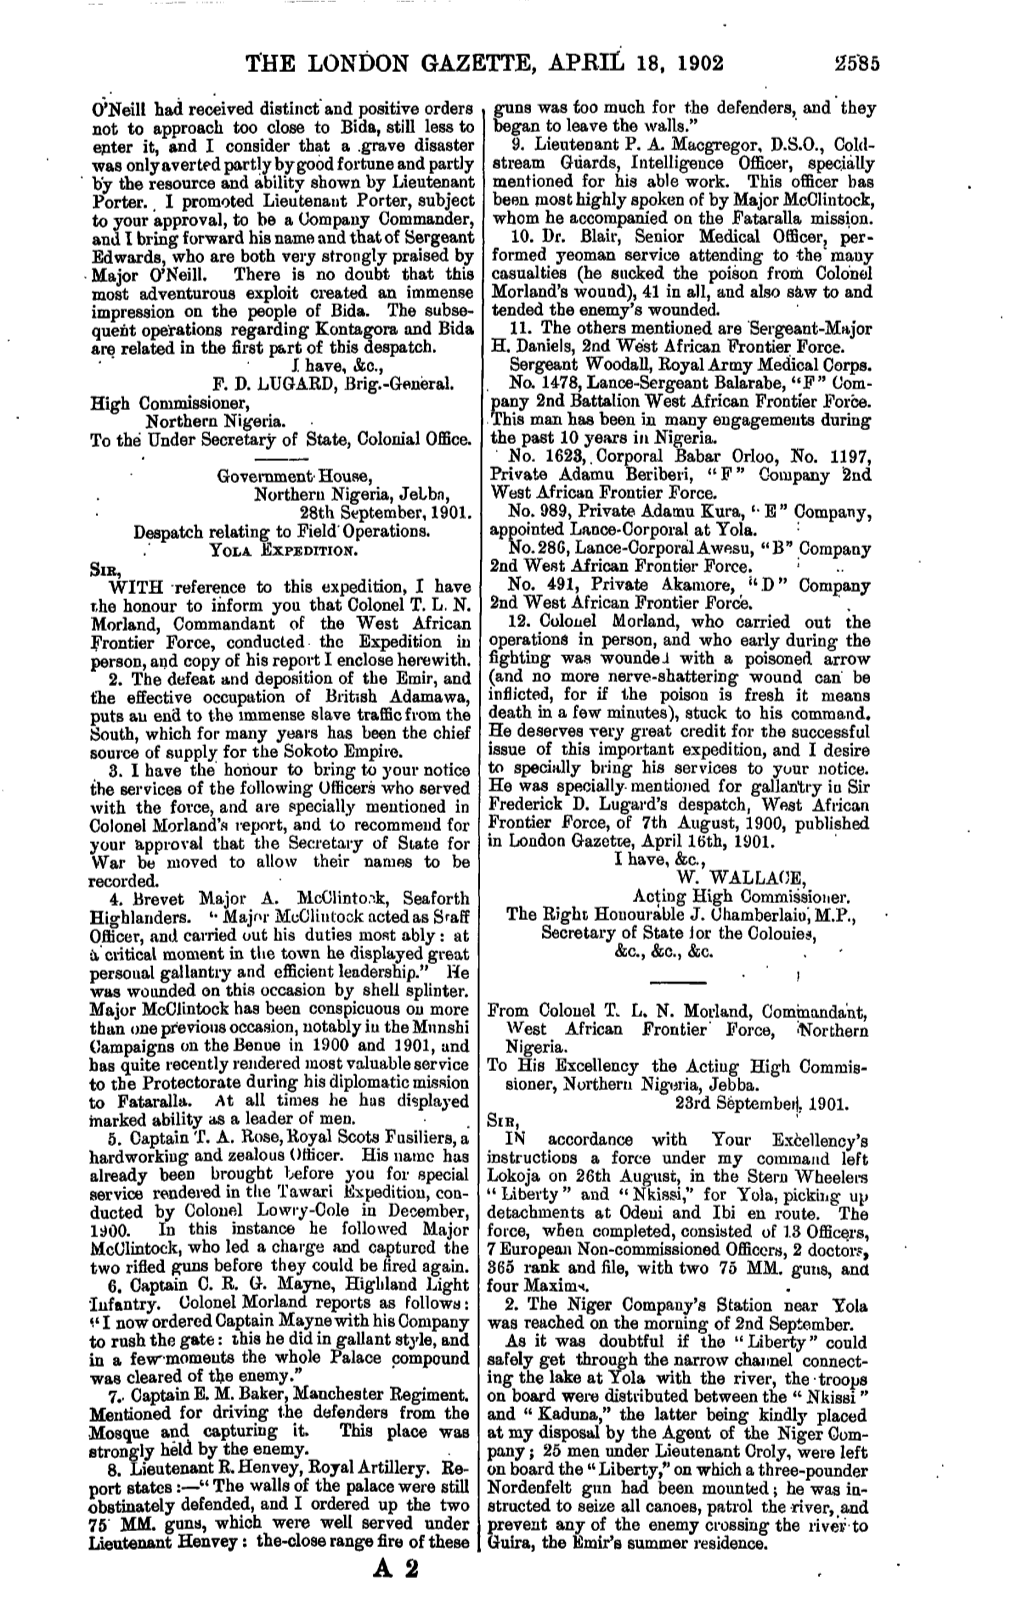 The London Gazette, Apbil 18, 1902